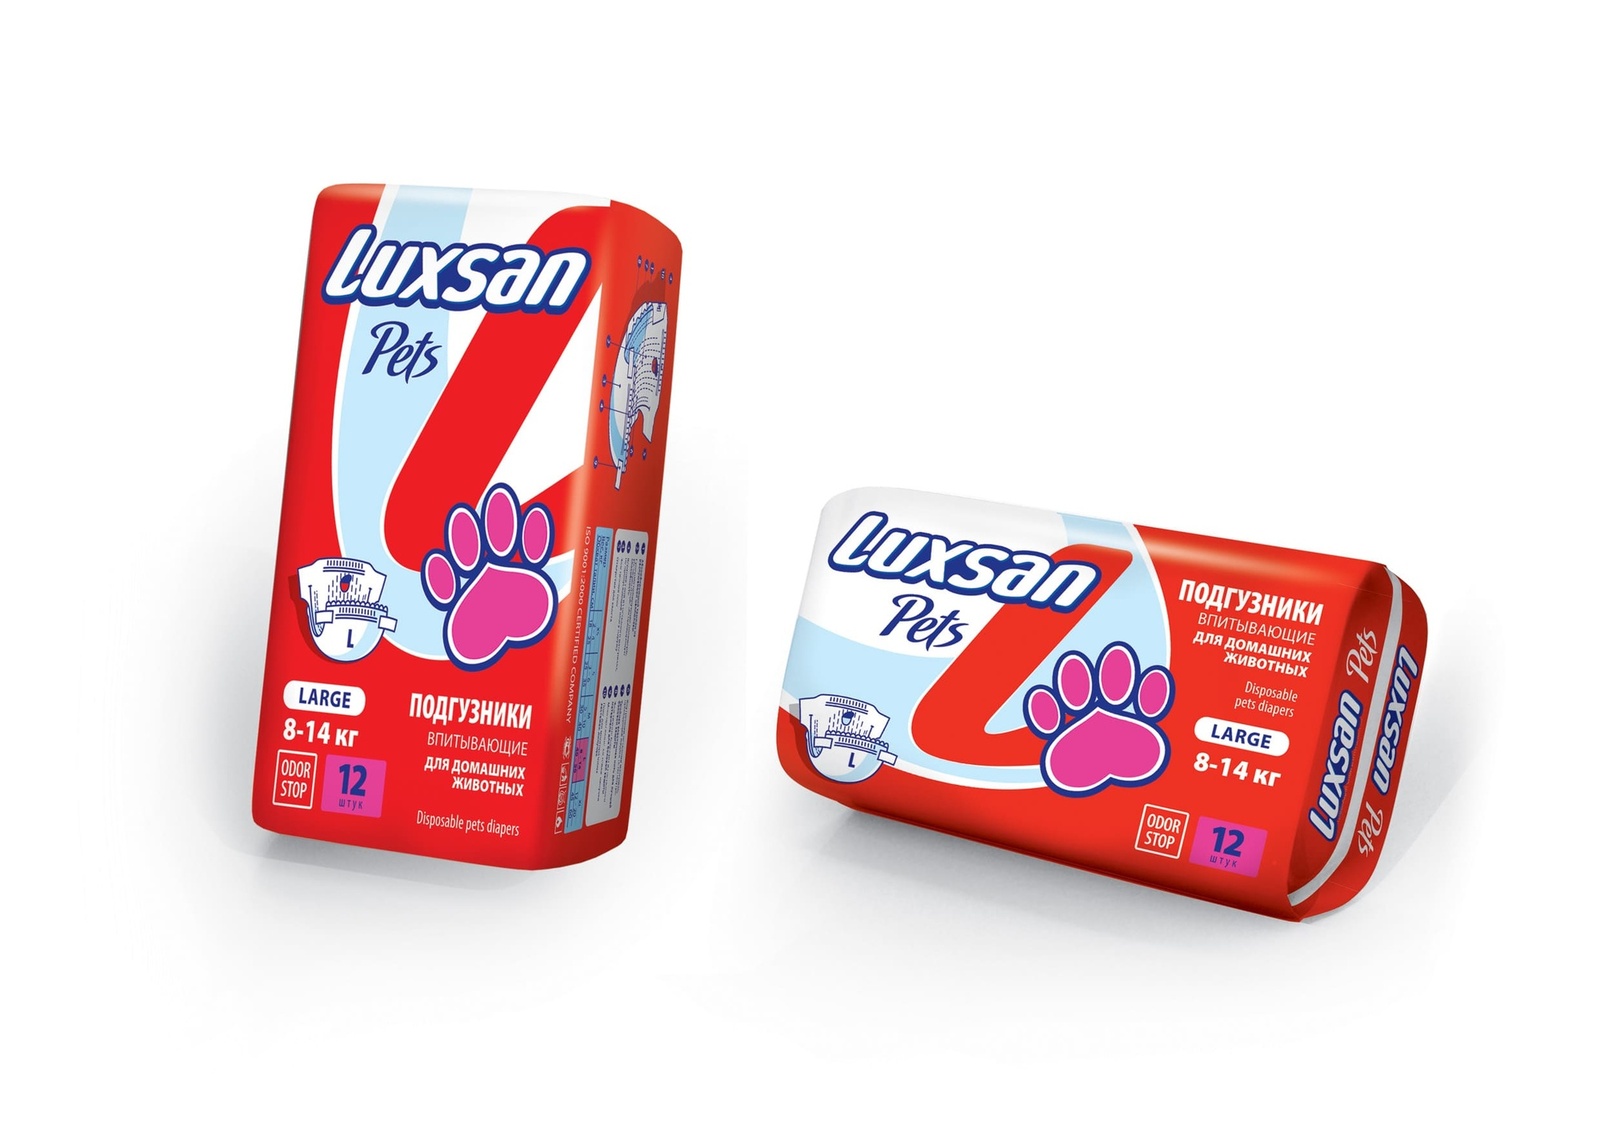 Luxsan Luxsan подгузники для животных: 8-14 кг, 12 шт. (340 г) luxsan пелёнка premium extra 60х60 10 12